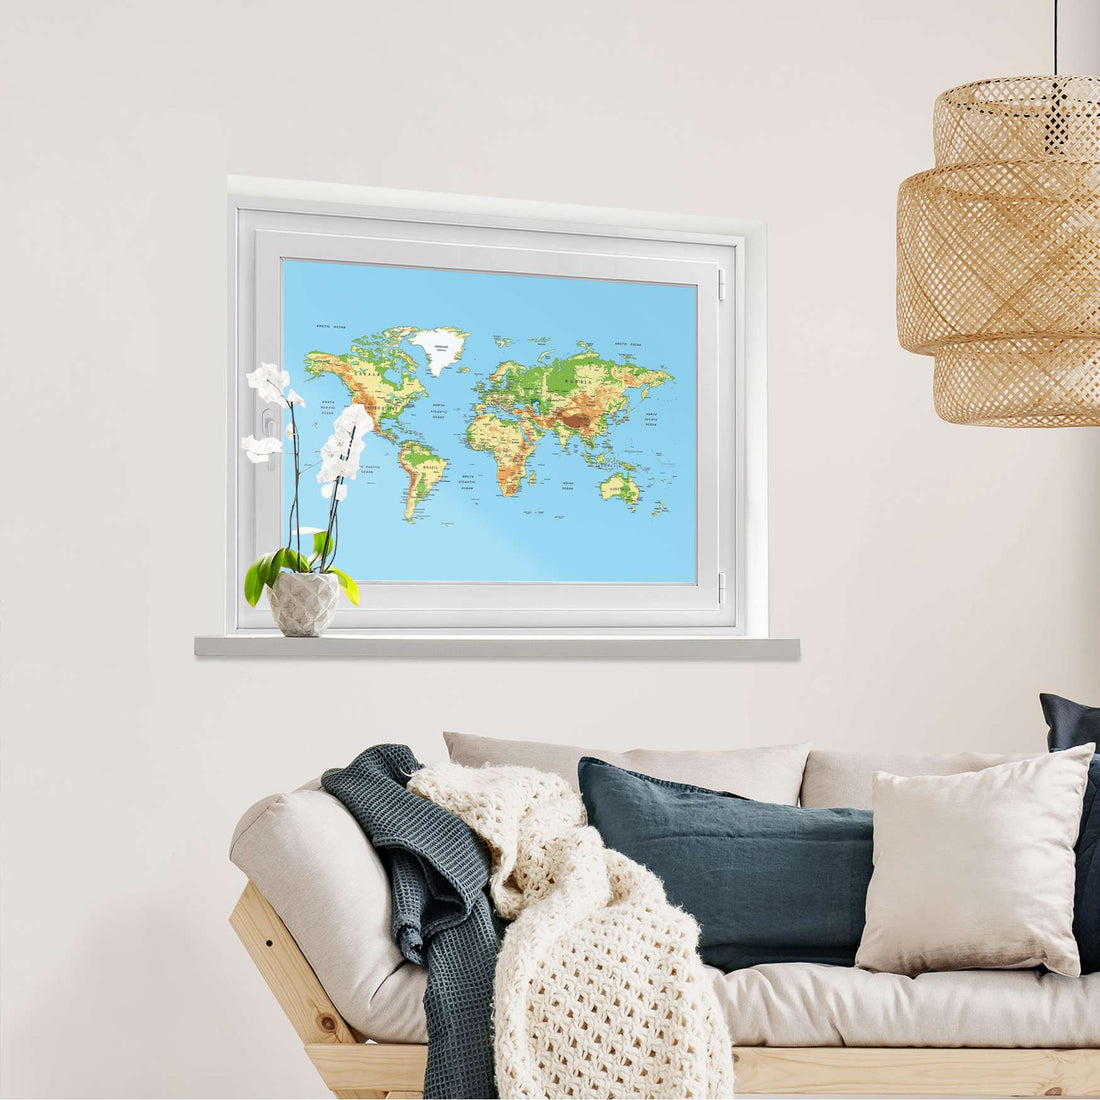 Fensterfolie [quer] Geografische Weltkarte  - Wohnzimmer100cm x 70cm